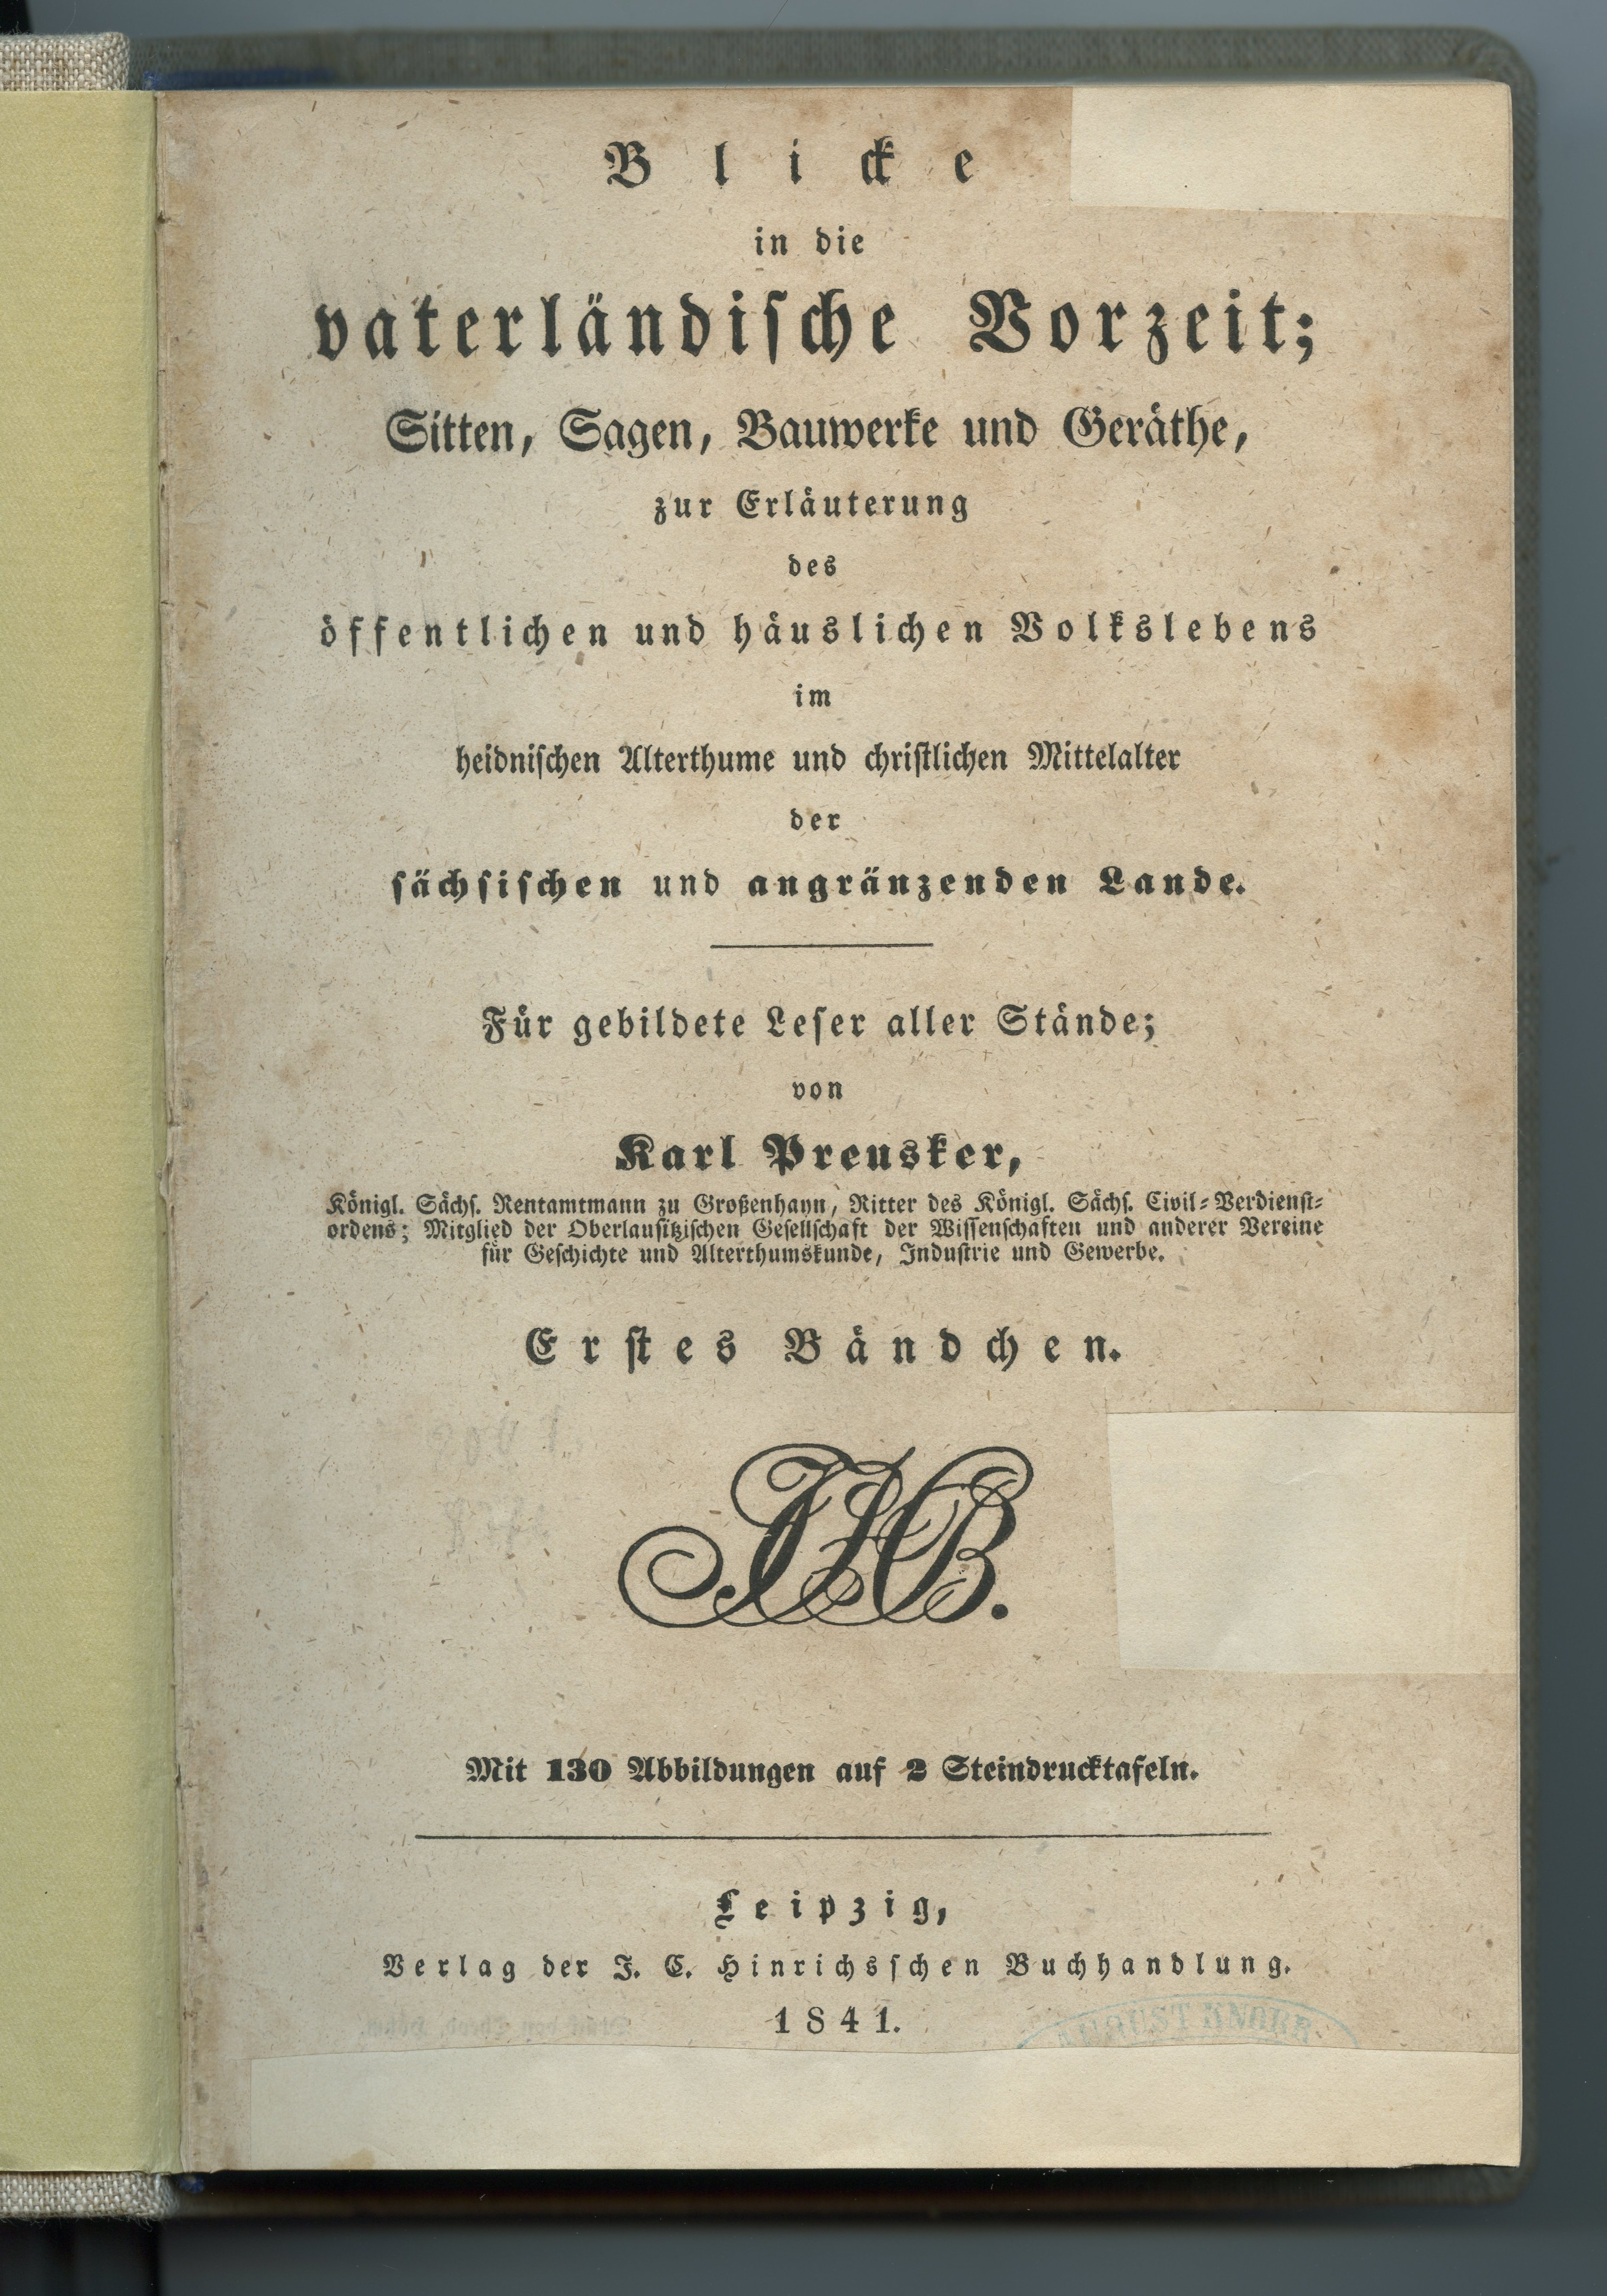 Preusker, Karl: Blicke in die vaterländische Vorzeit [...]. Bd. 1-3, 1841-1844 (Museum Alte Lateinschule CC BY-NC-SA)